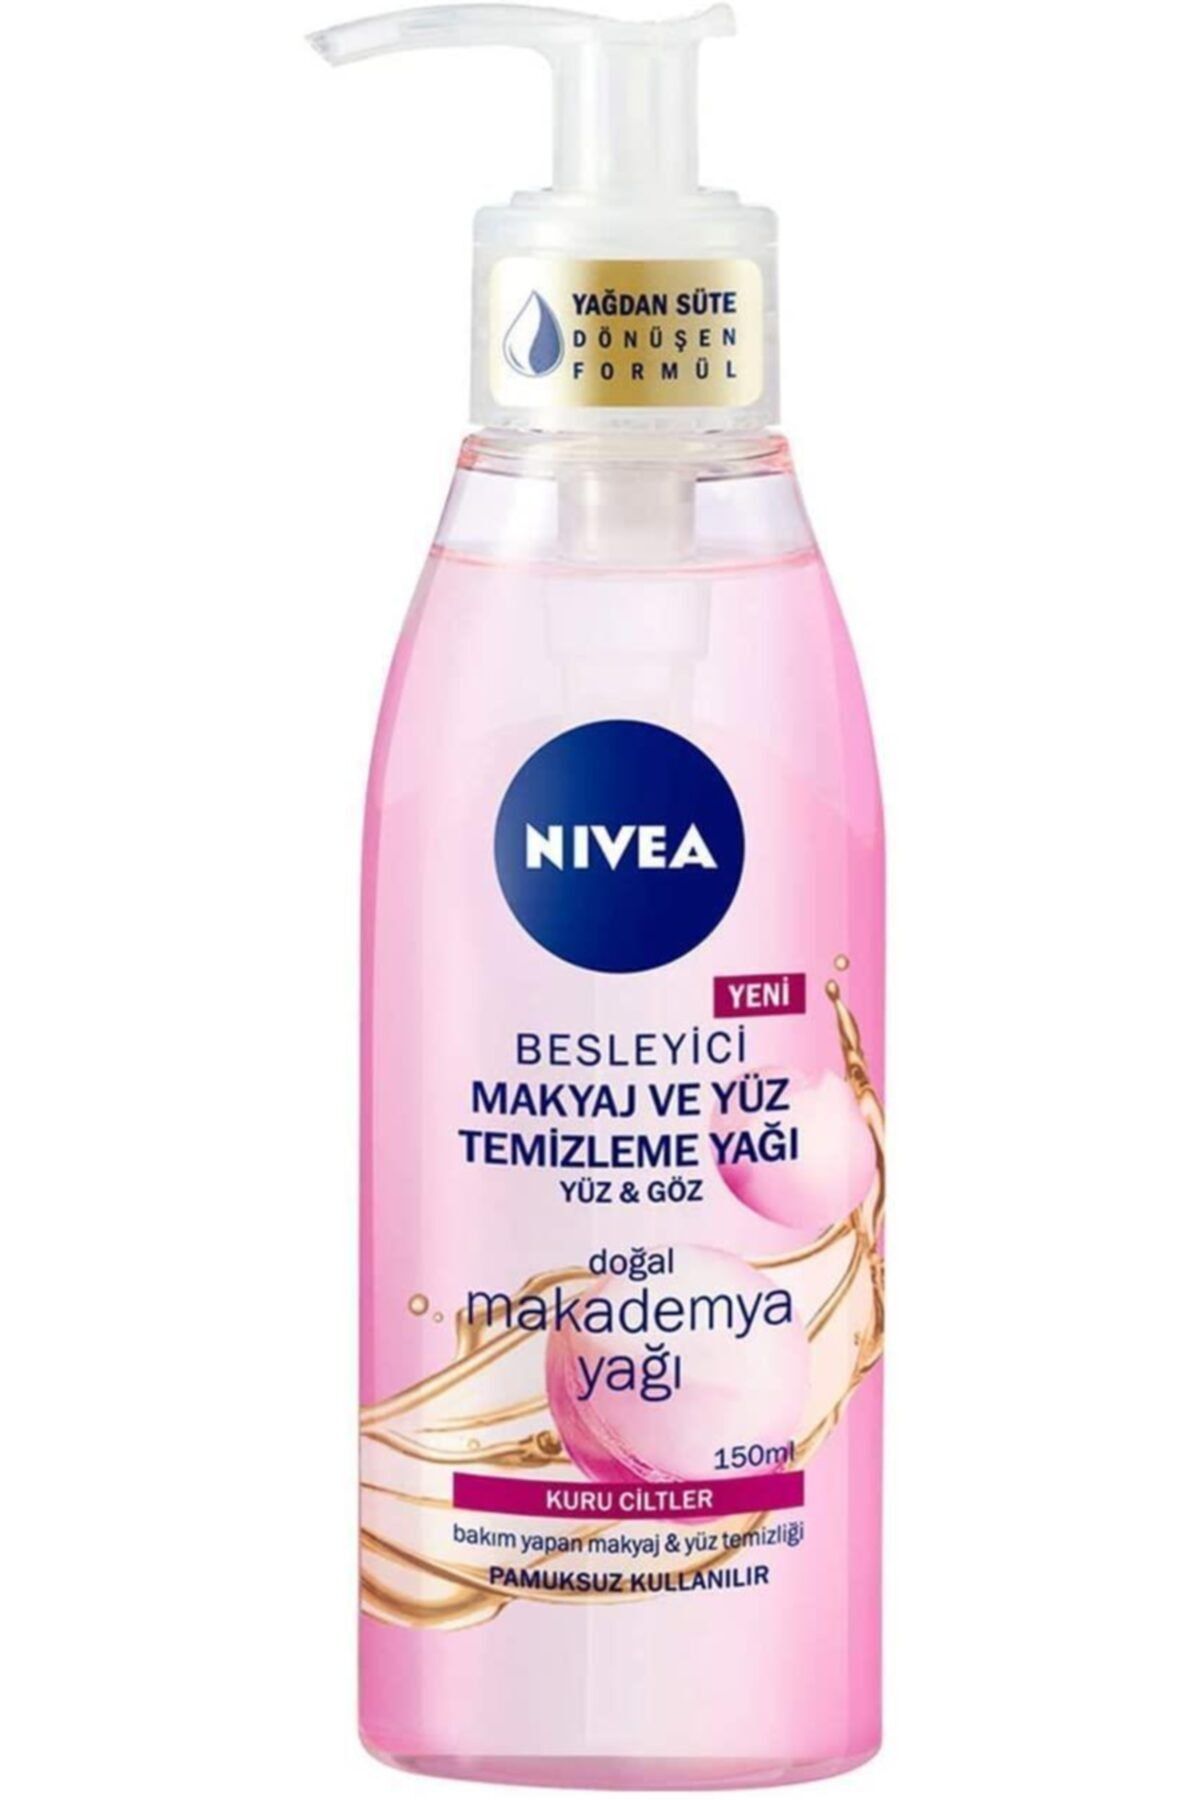 NIVEA Besleyici Makyaj Ve Yüz Temizleme Yağı, 150 Ml